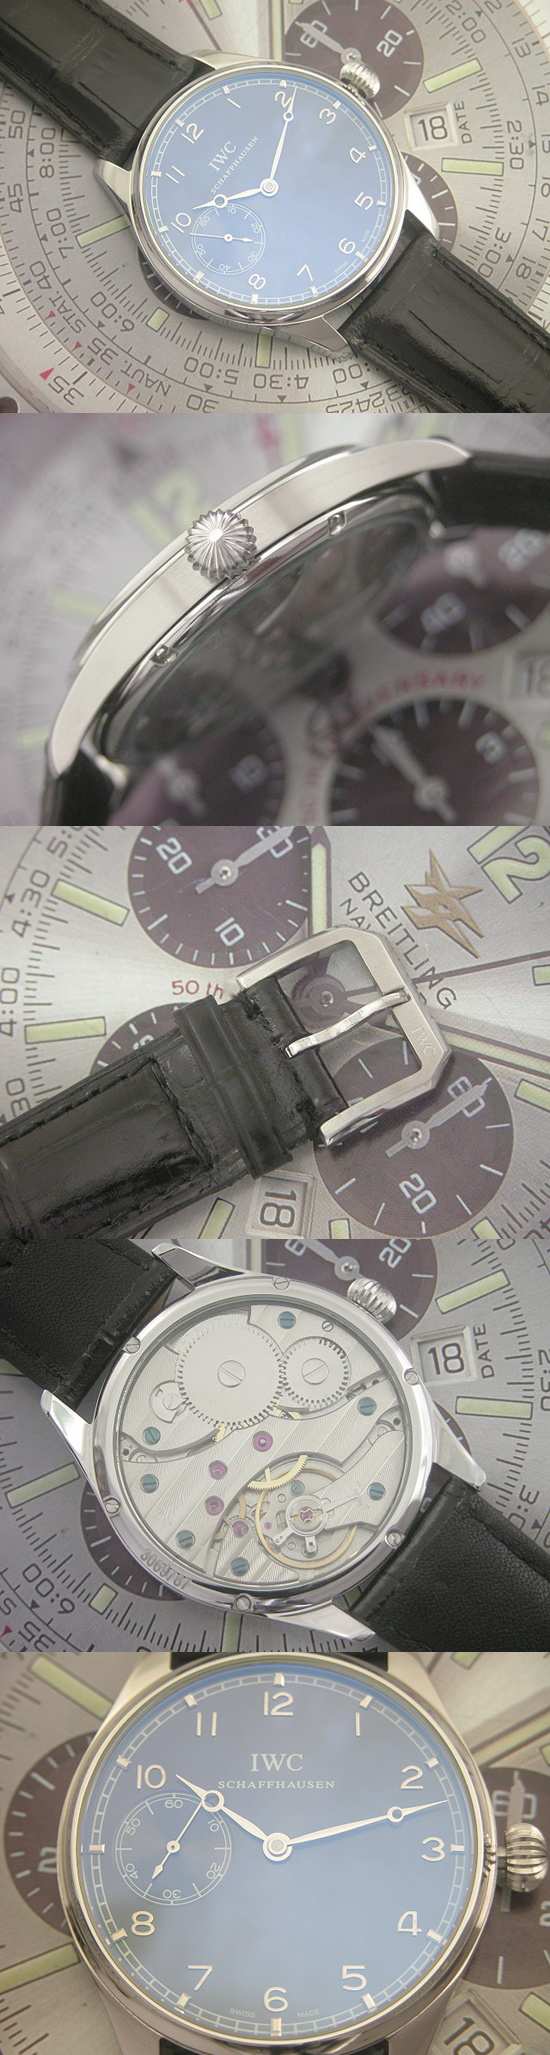 おしゃれなブランド時計がIWC-ポルトギーゼ-IWC-IW524204-ab-男性用を提供します.